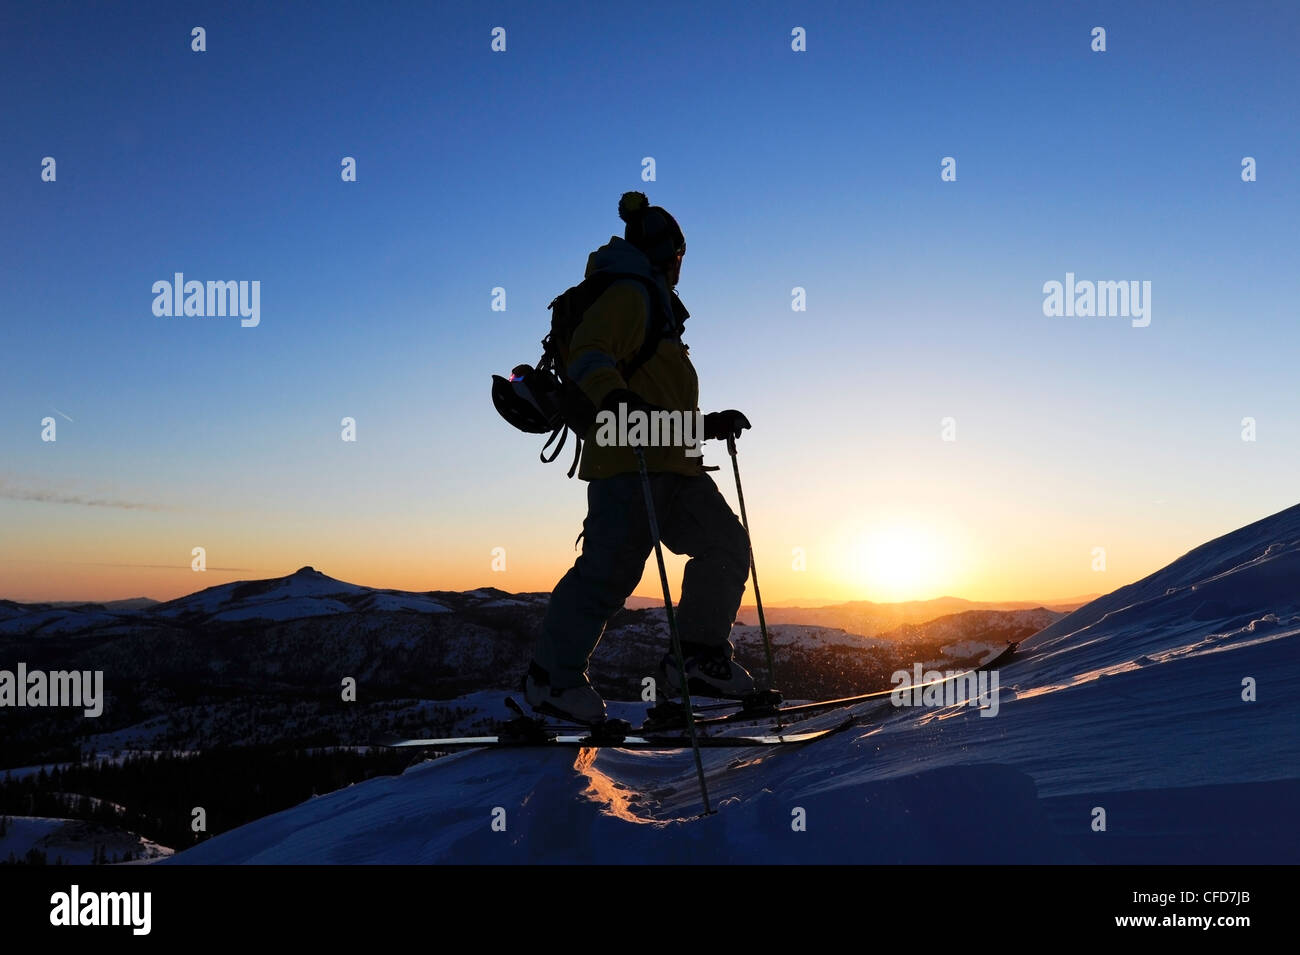 Une silhouette d'un skieur en regardant le lever du soleil dans la Sierra Nevada, près du lac Tahoe, en Californie. Banque D'Images